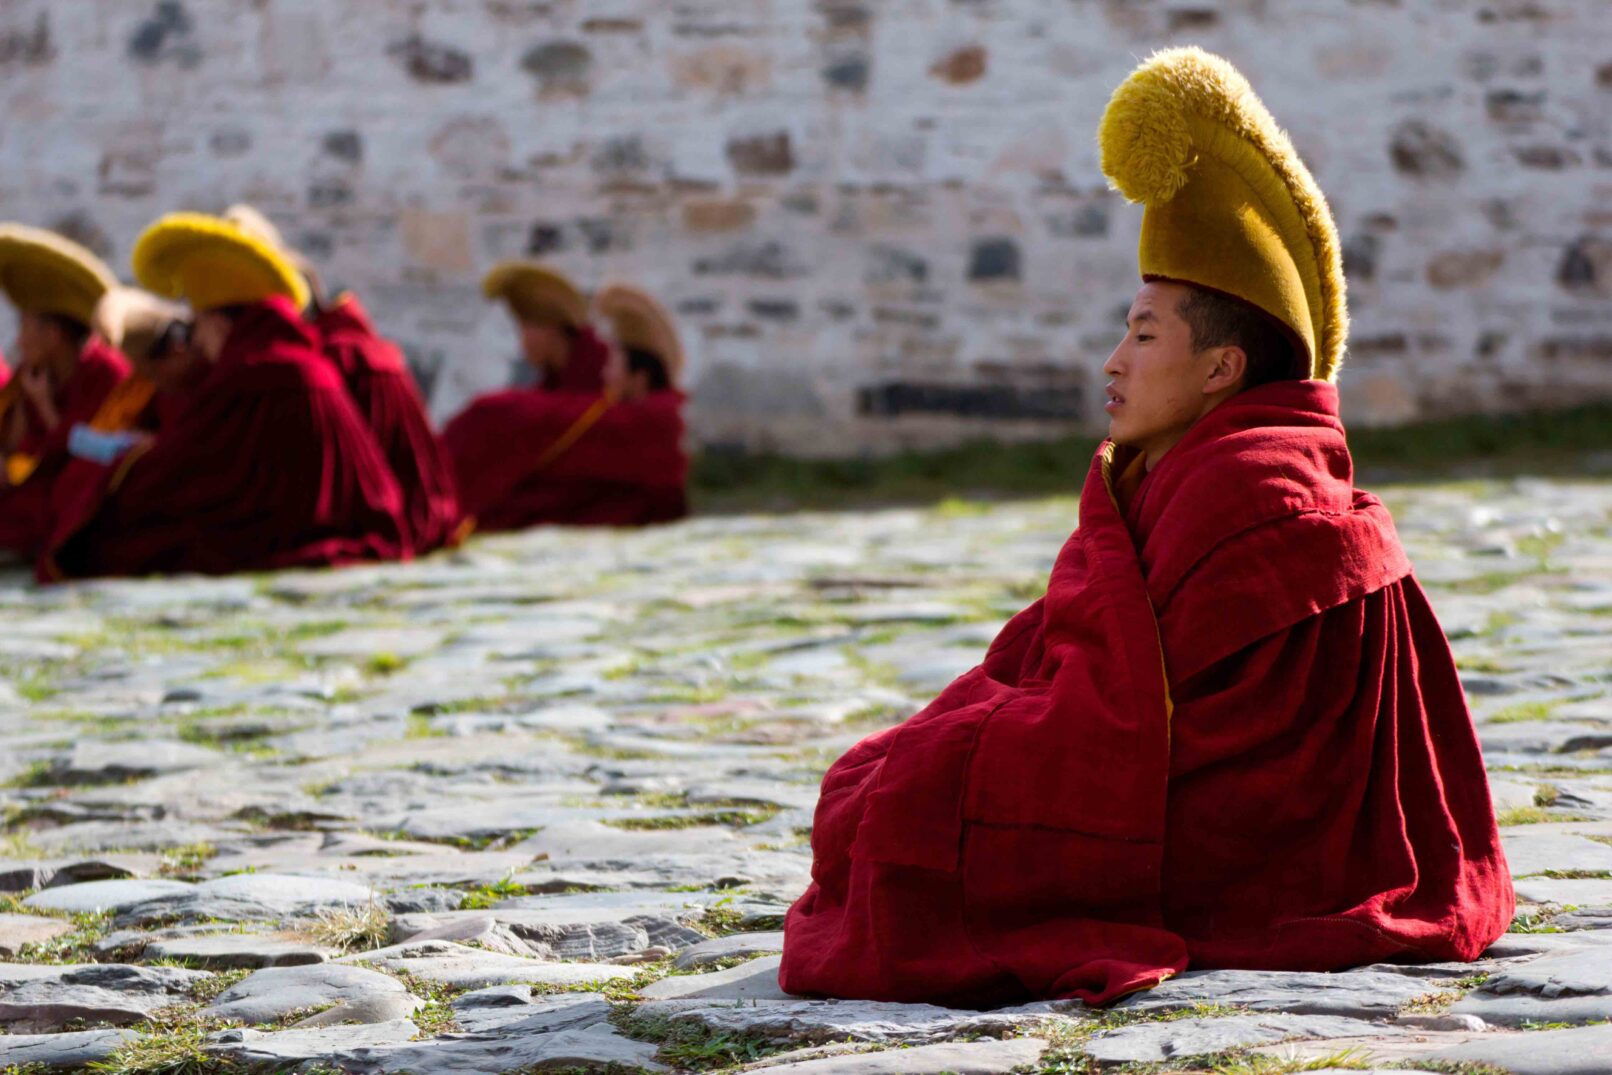 Monks at at ceremony, Labrang Monastery, Xiahe, China